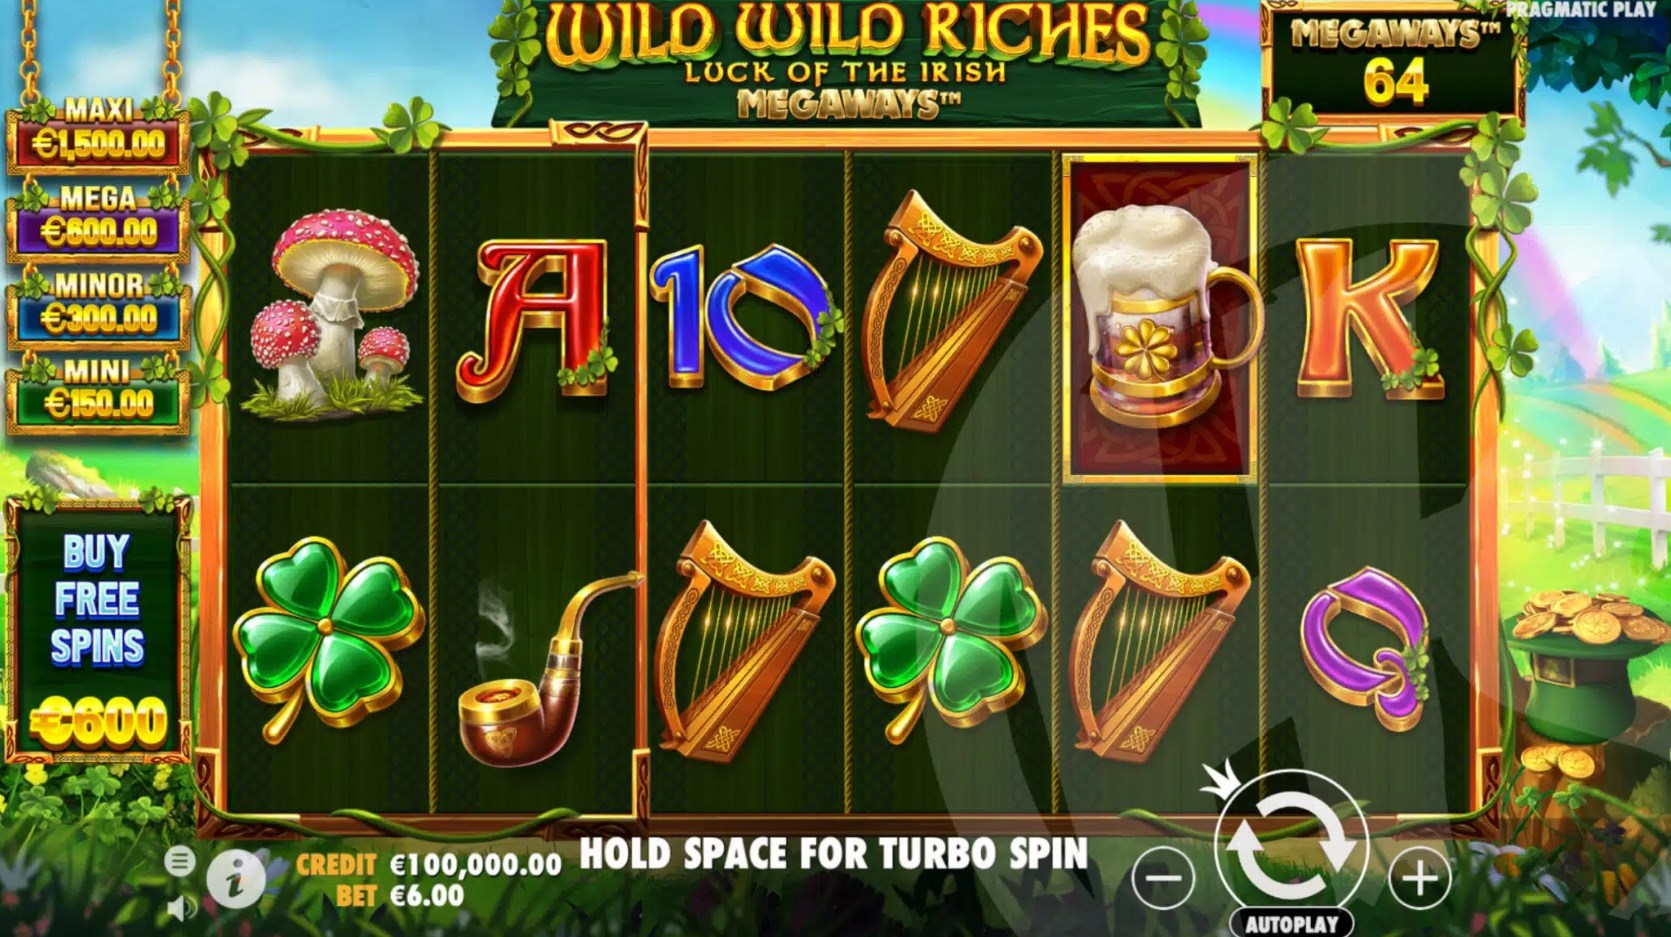 Wild Wild Riches slot game download latest version  1.0.0 screenshot 3